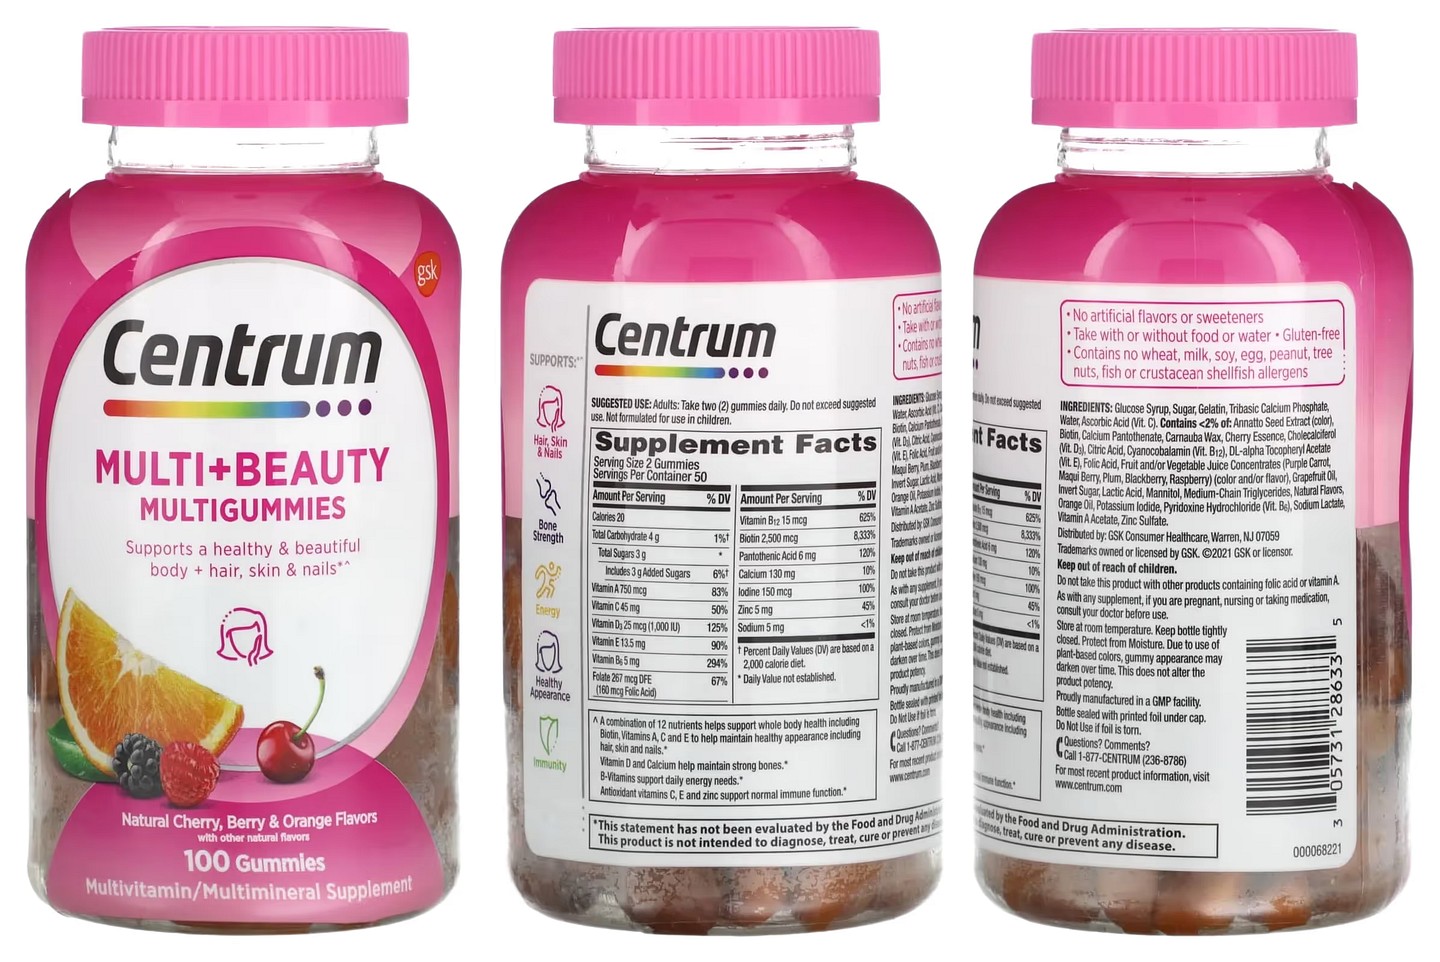 Centrum, Multi + Beauty Multigummies packaging